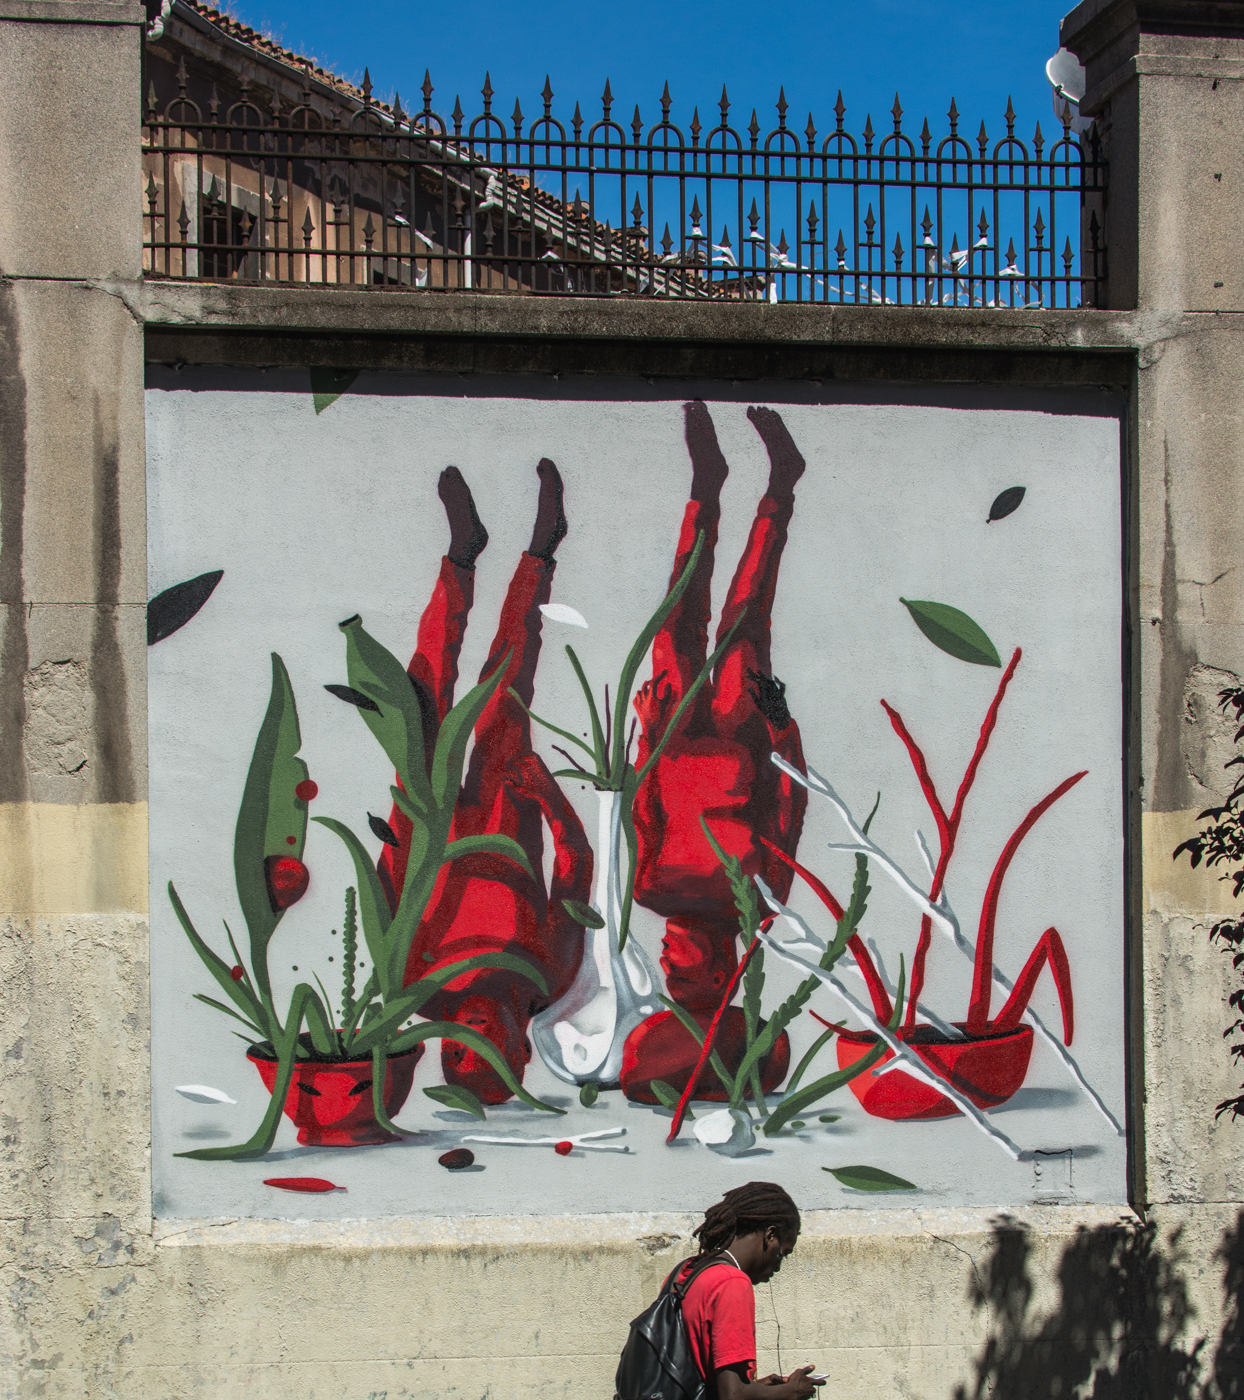 Lolo final - MurosTabacalera by Guillermo de la Madrid - Madrid Street Art Project.jpg